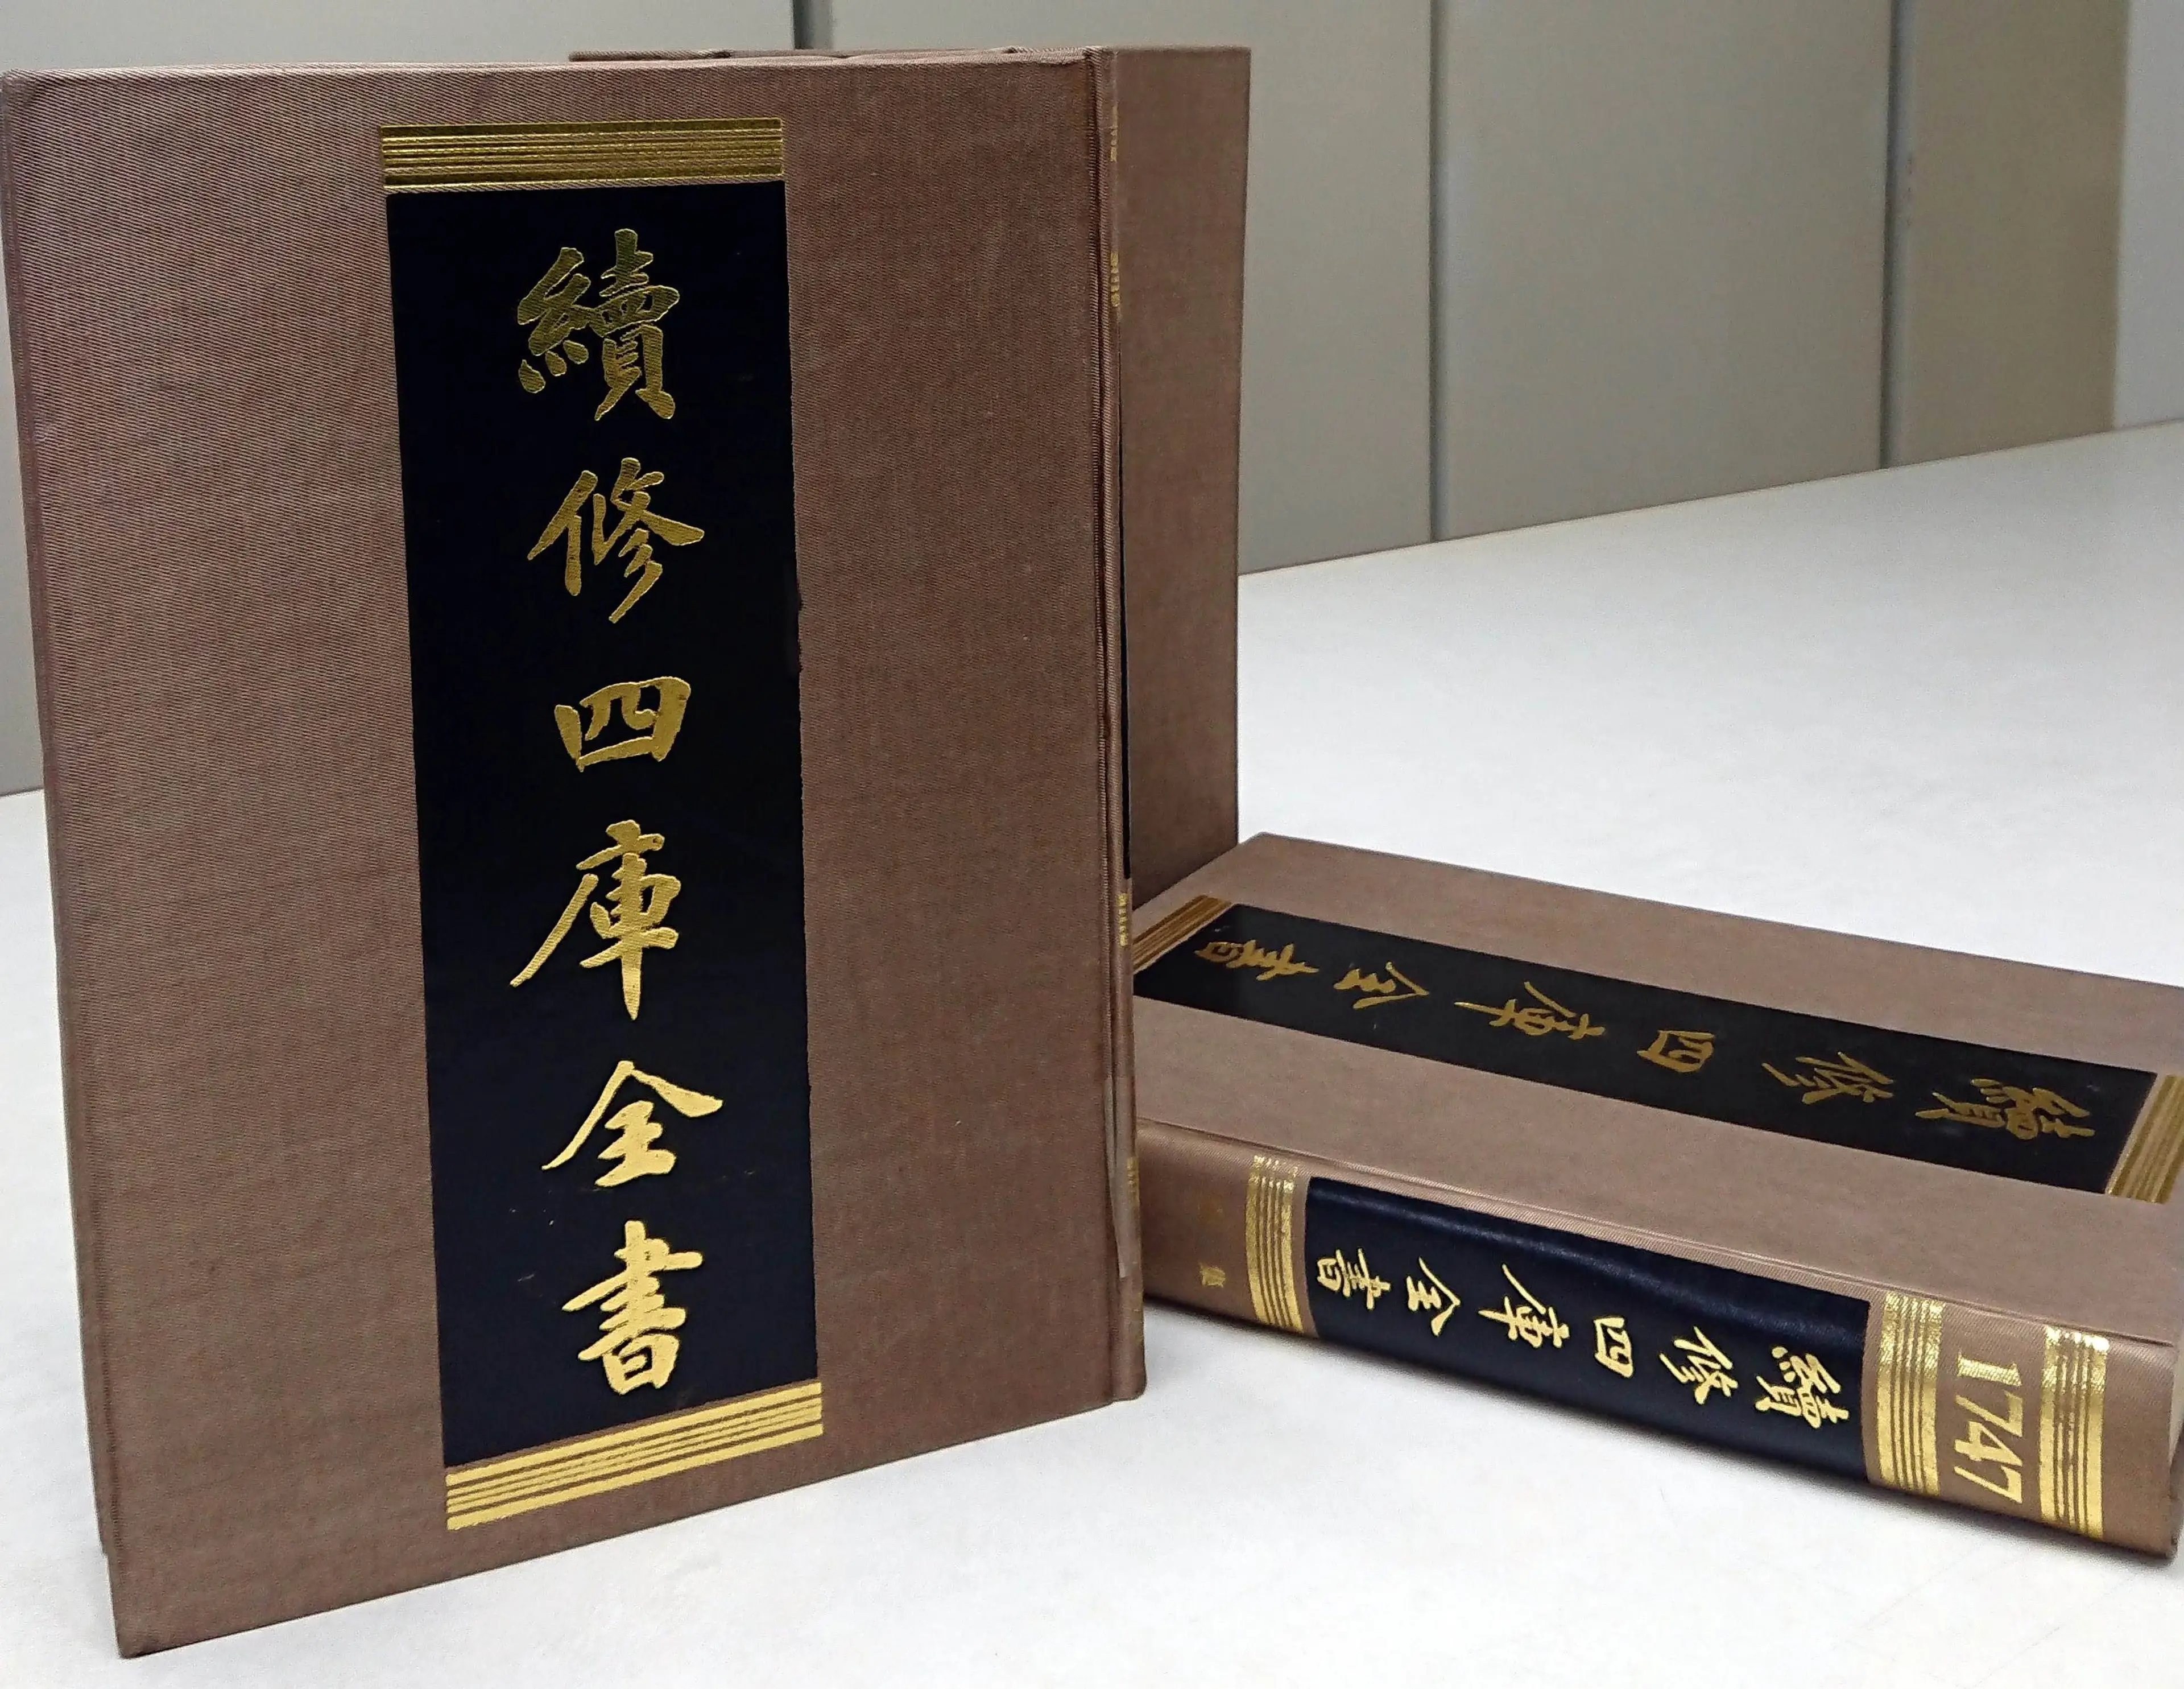 私が読んだバージョン。上海古籍出版社、清道光 2 年の寶寧堂刻本。